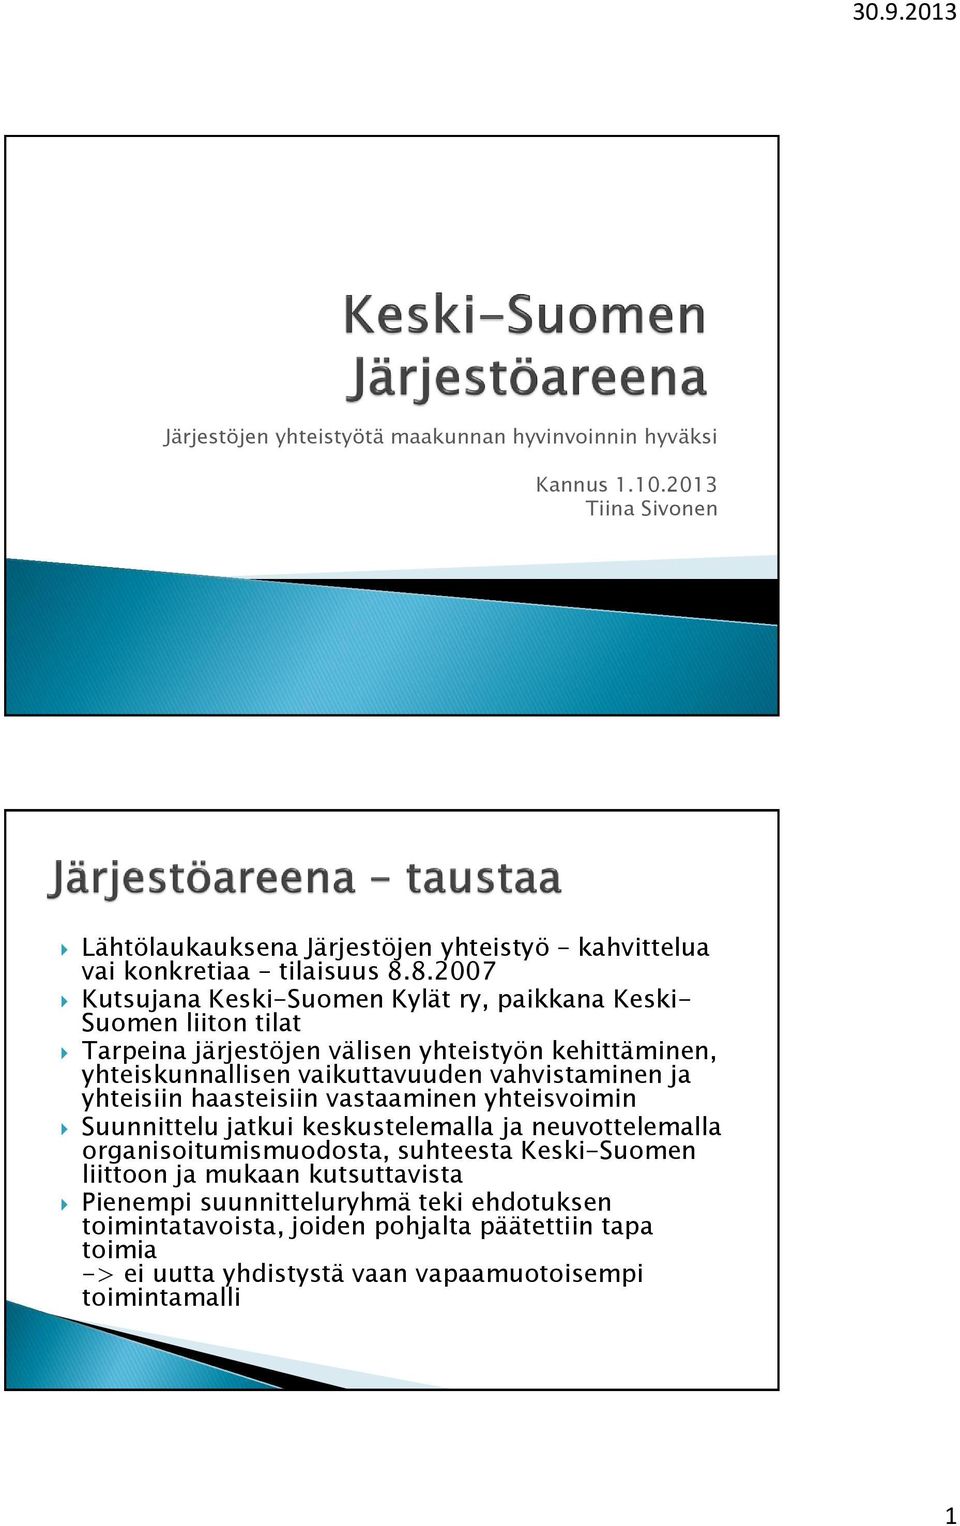 vahvistaminen ja yhteisiin haasteisiin vastaaminen yhteisvoimin Suunnittelu jatkui keskustelemalla ja neuvottelemalla organisoitumismuodosta, suhteesta Keski-Suomen